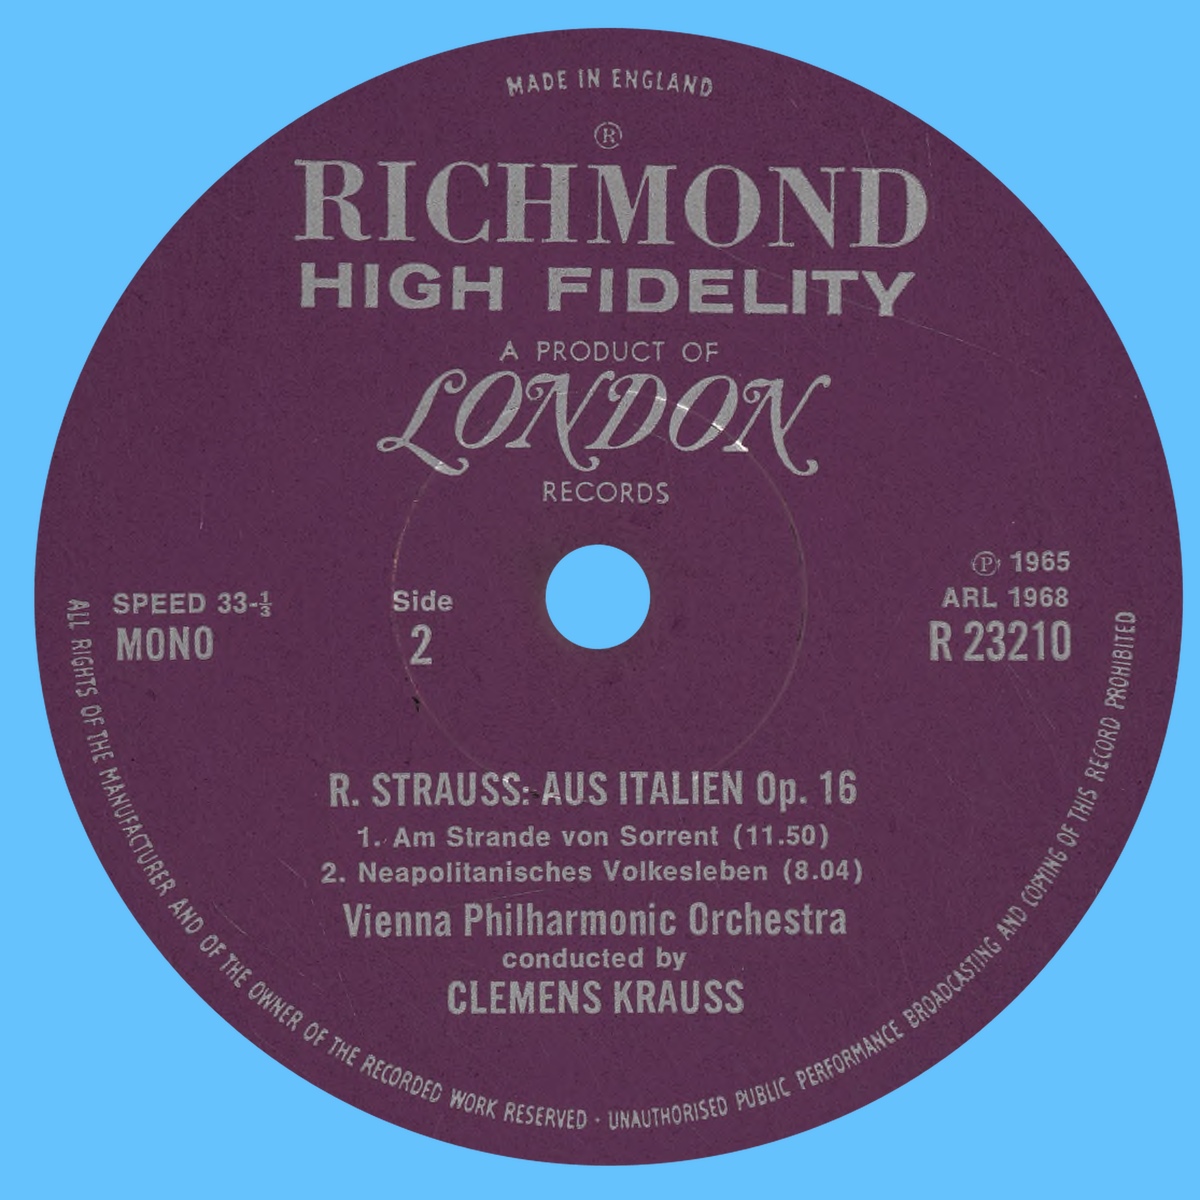 Étiquette verso du disque Decca LONDON R 23210